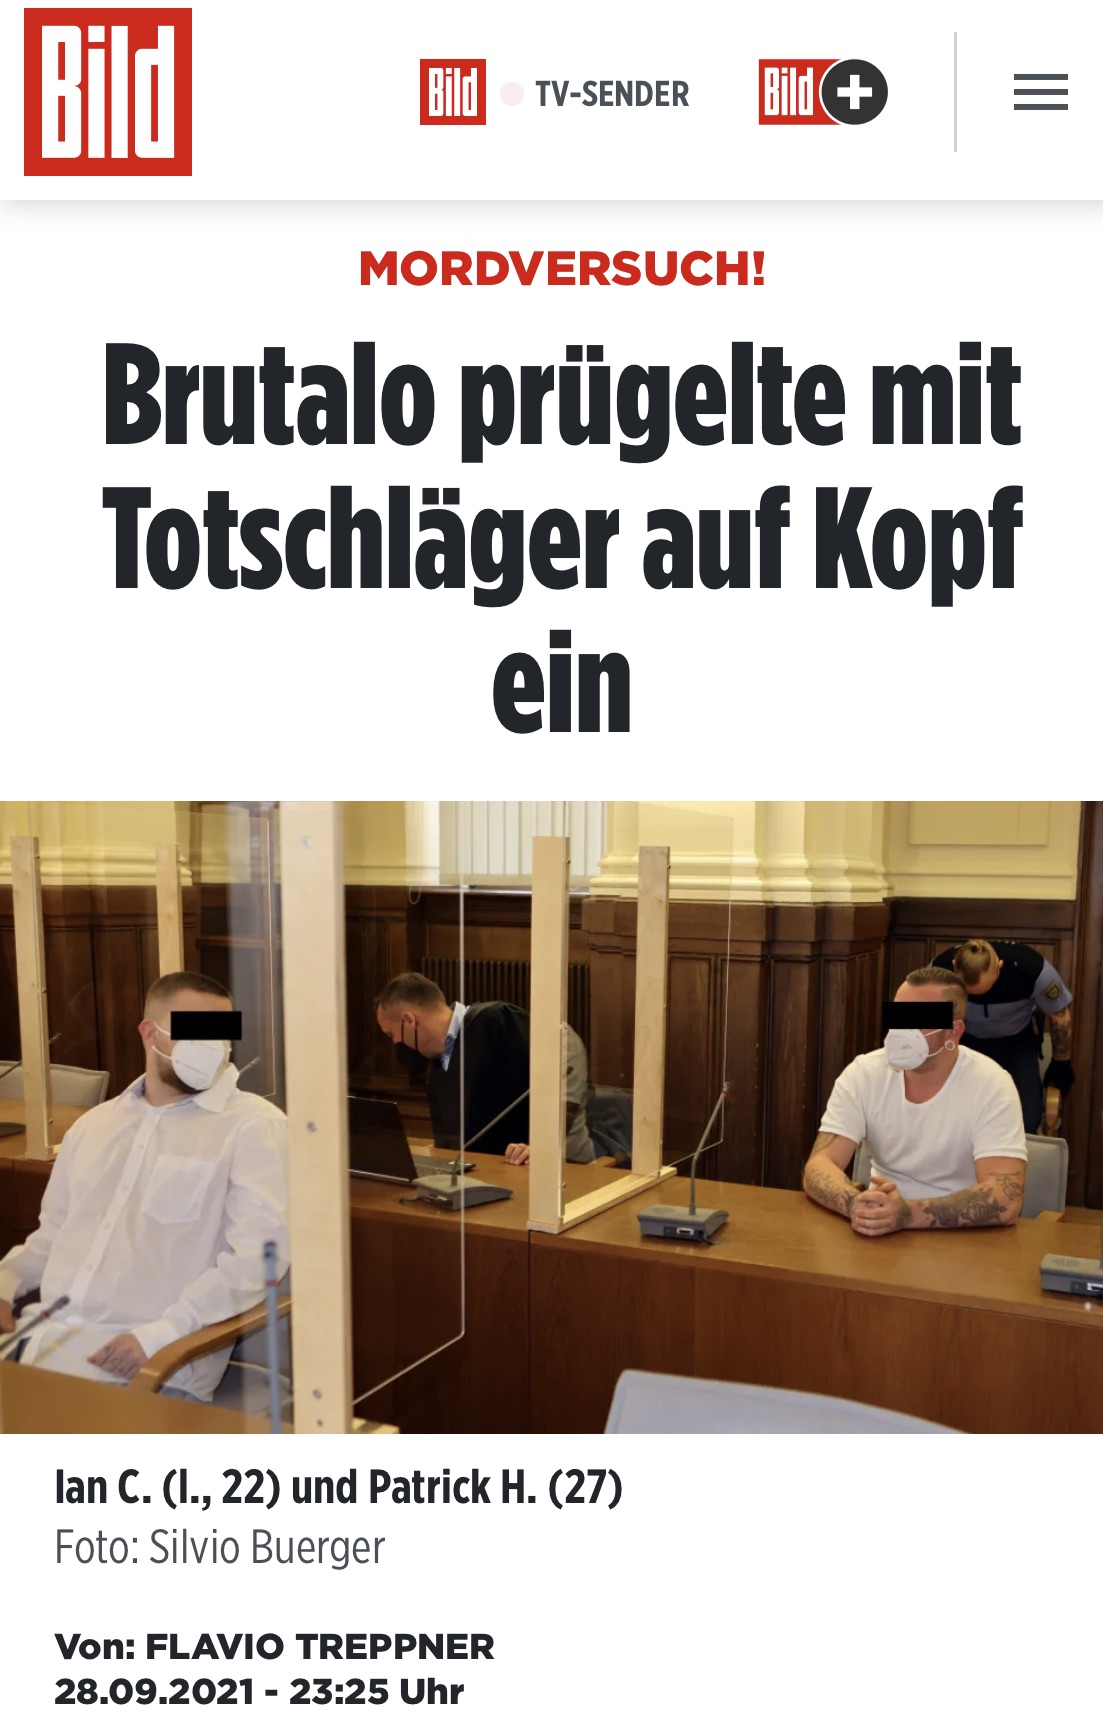 tl_files/Bilder/Mordversuch! Brutalo pruegelte mit Totschlaeger auf Kopf ein Regional BILD.de.png